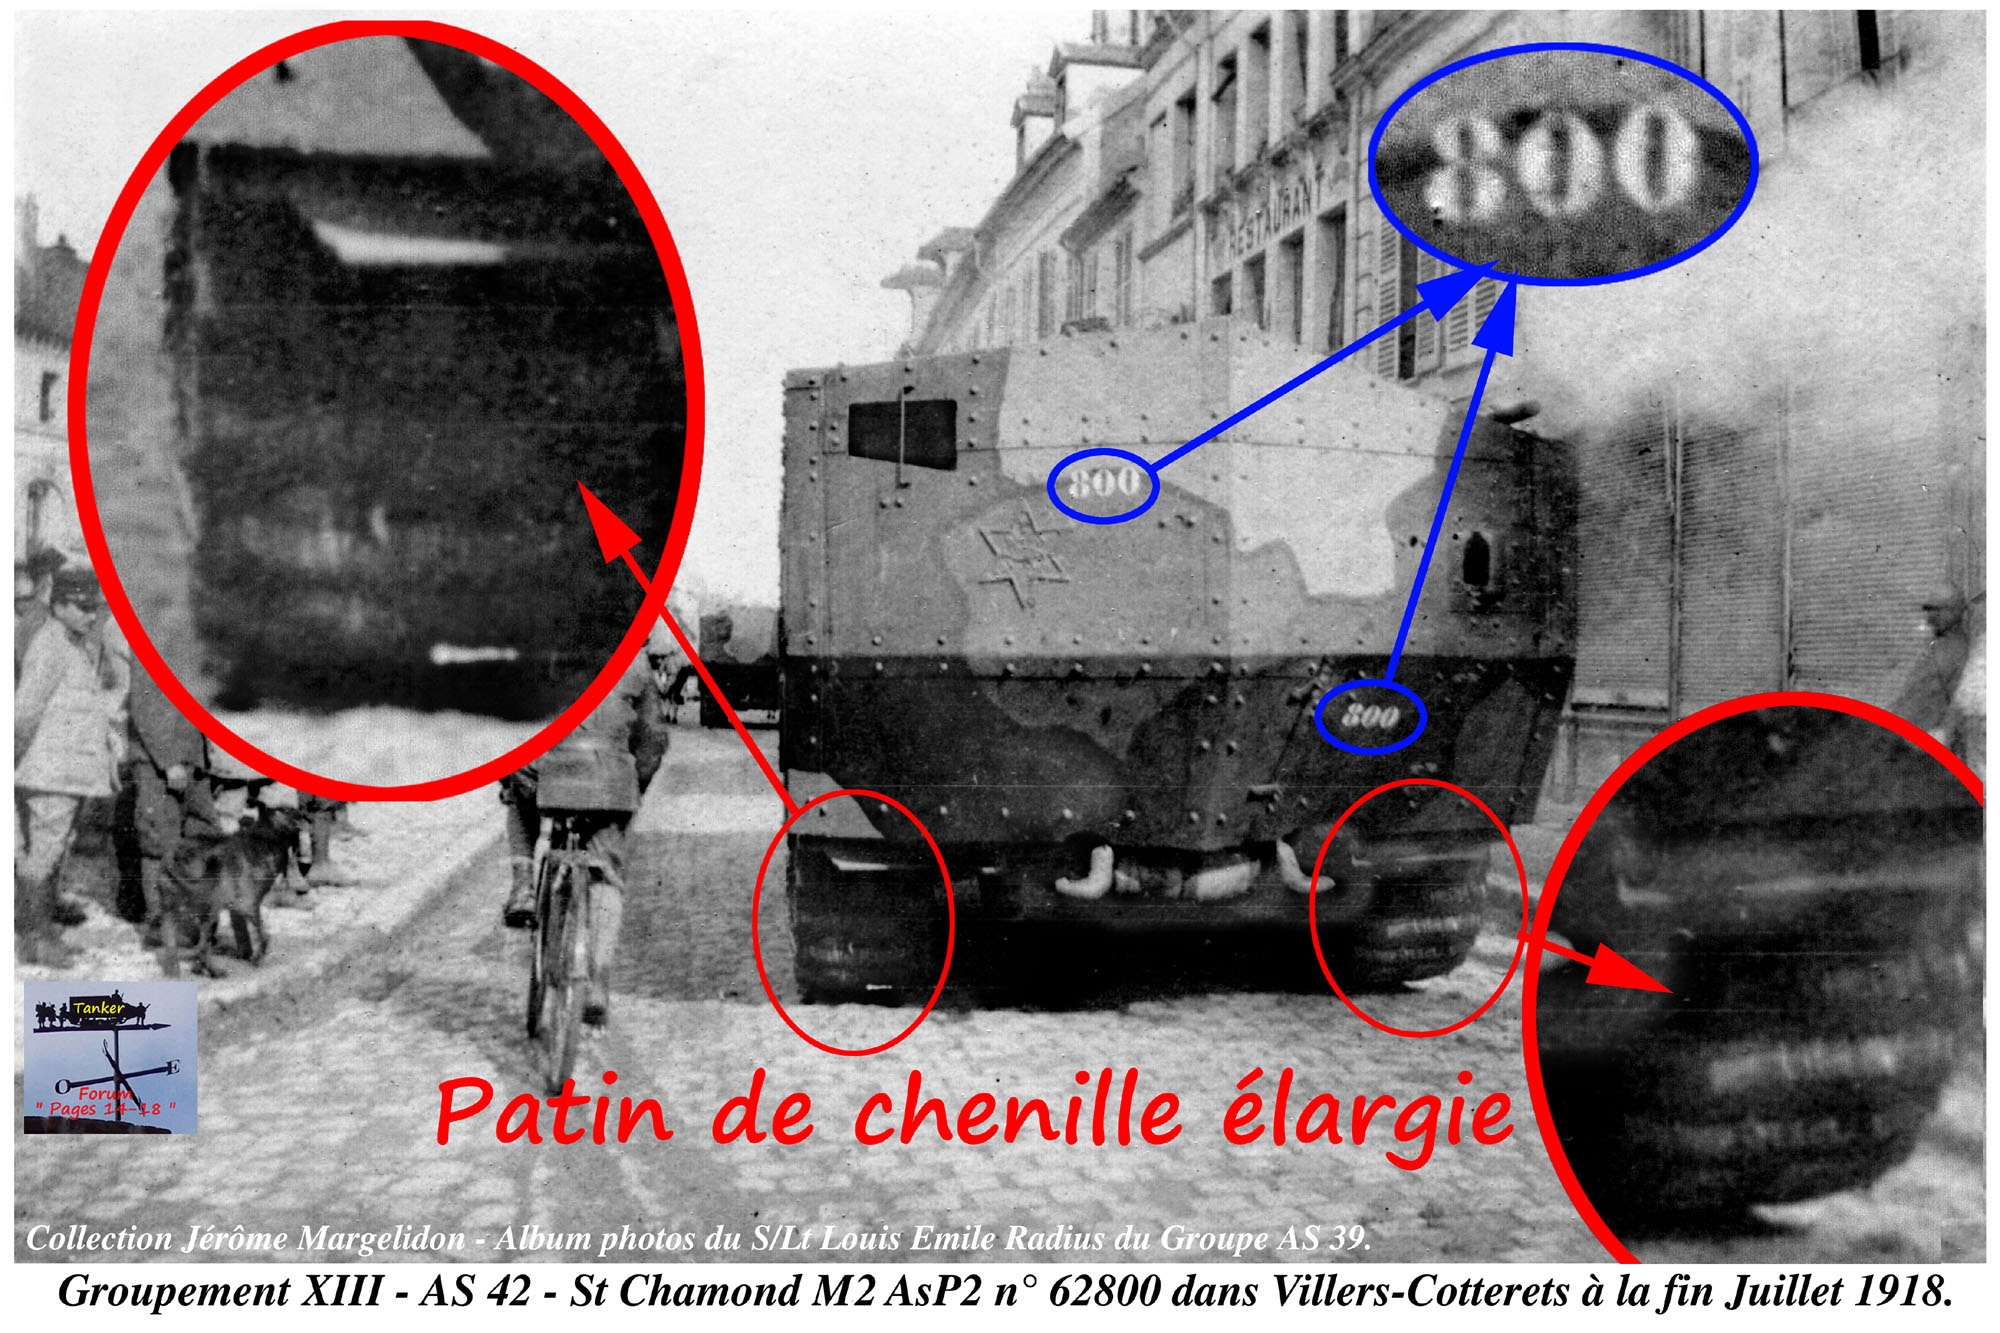 37 - Patin de chenille élargie du St Chamond M2 AsP2 n° 62800 de l'AS 42.jpg